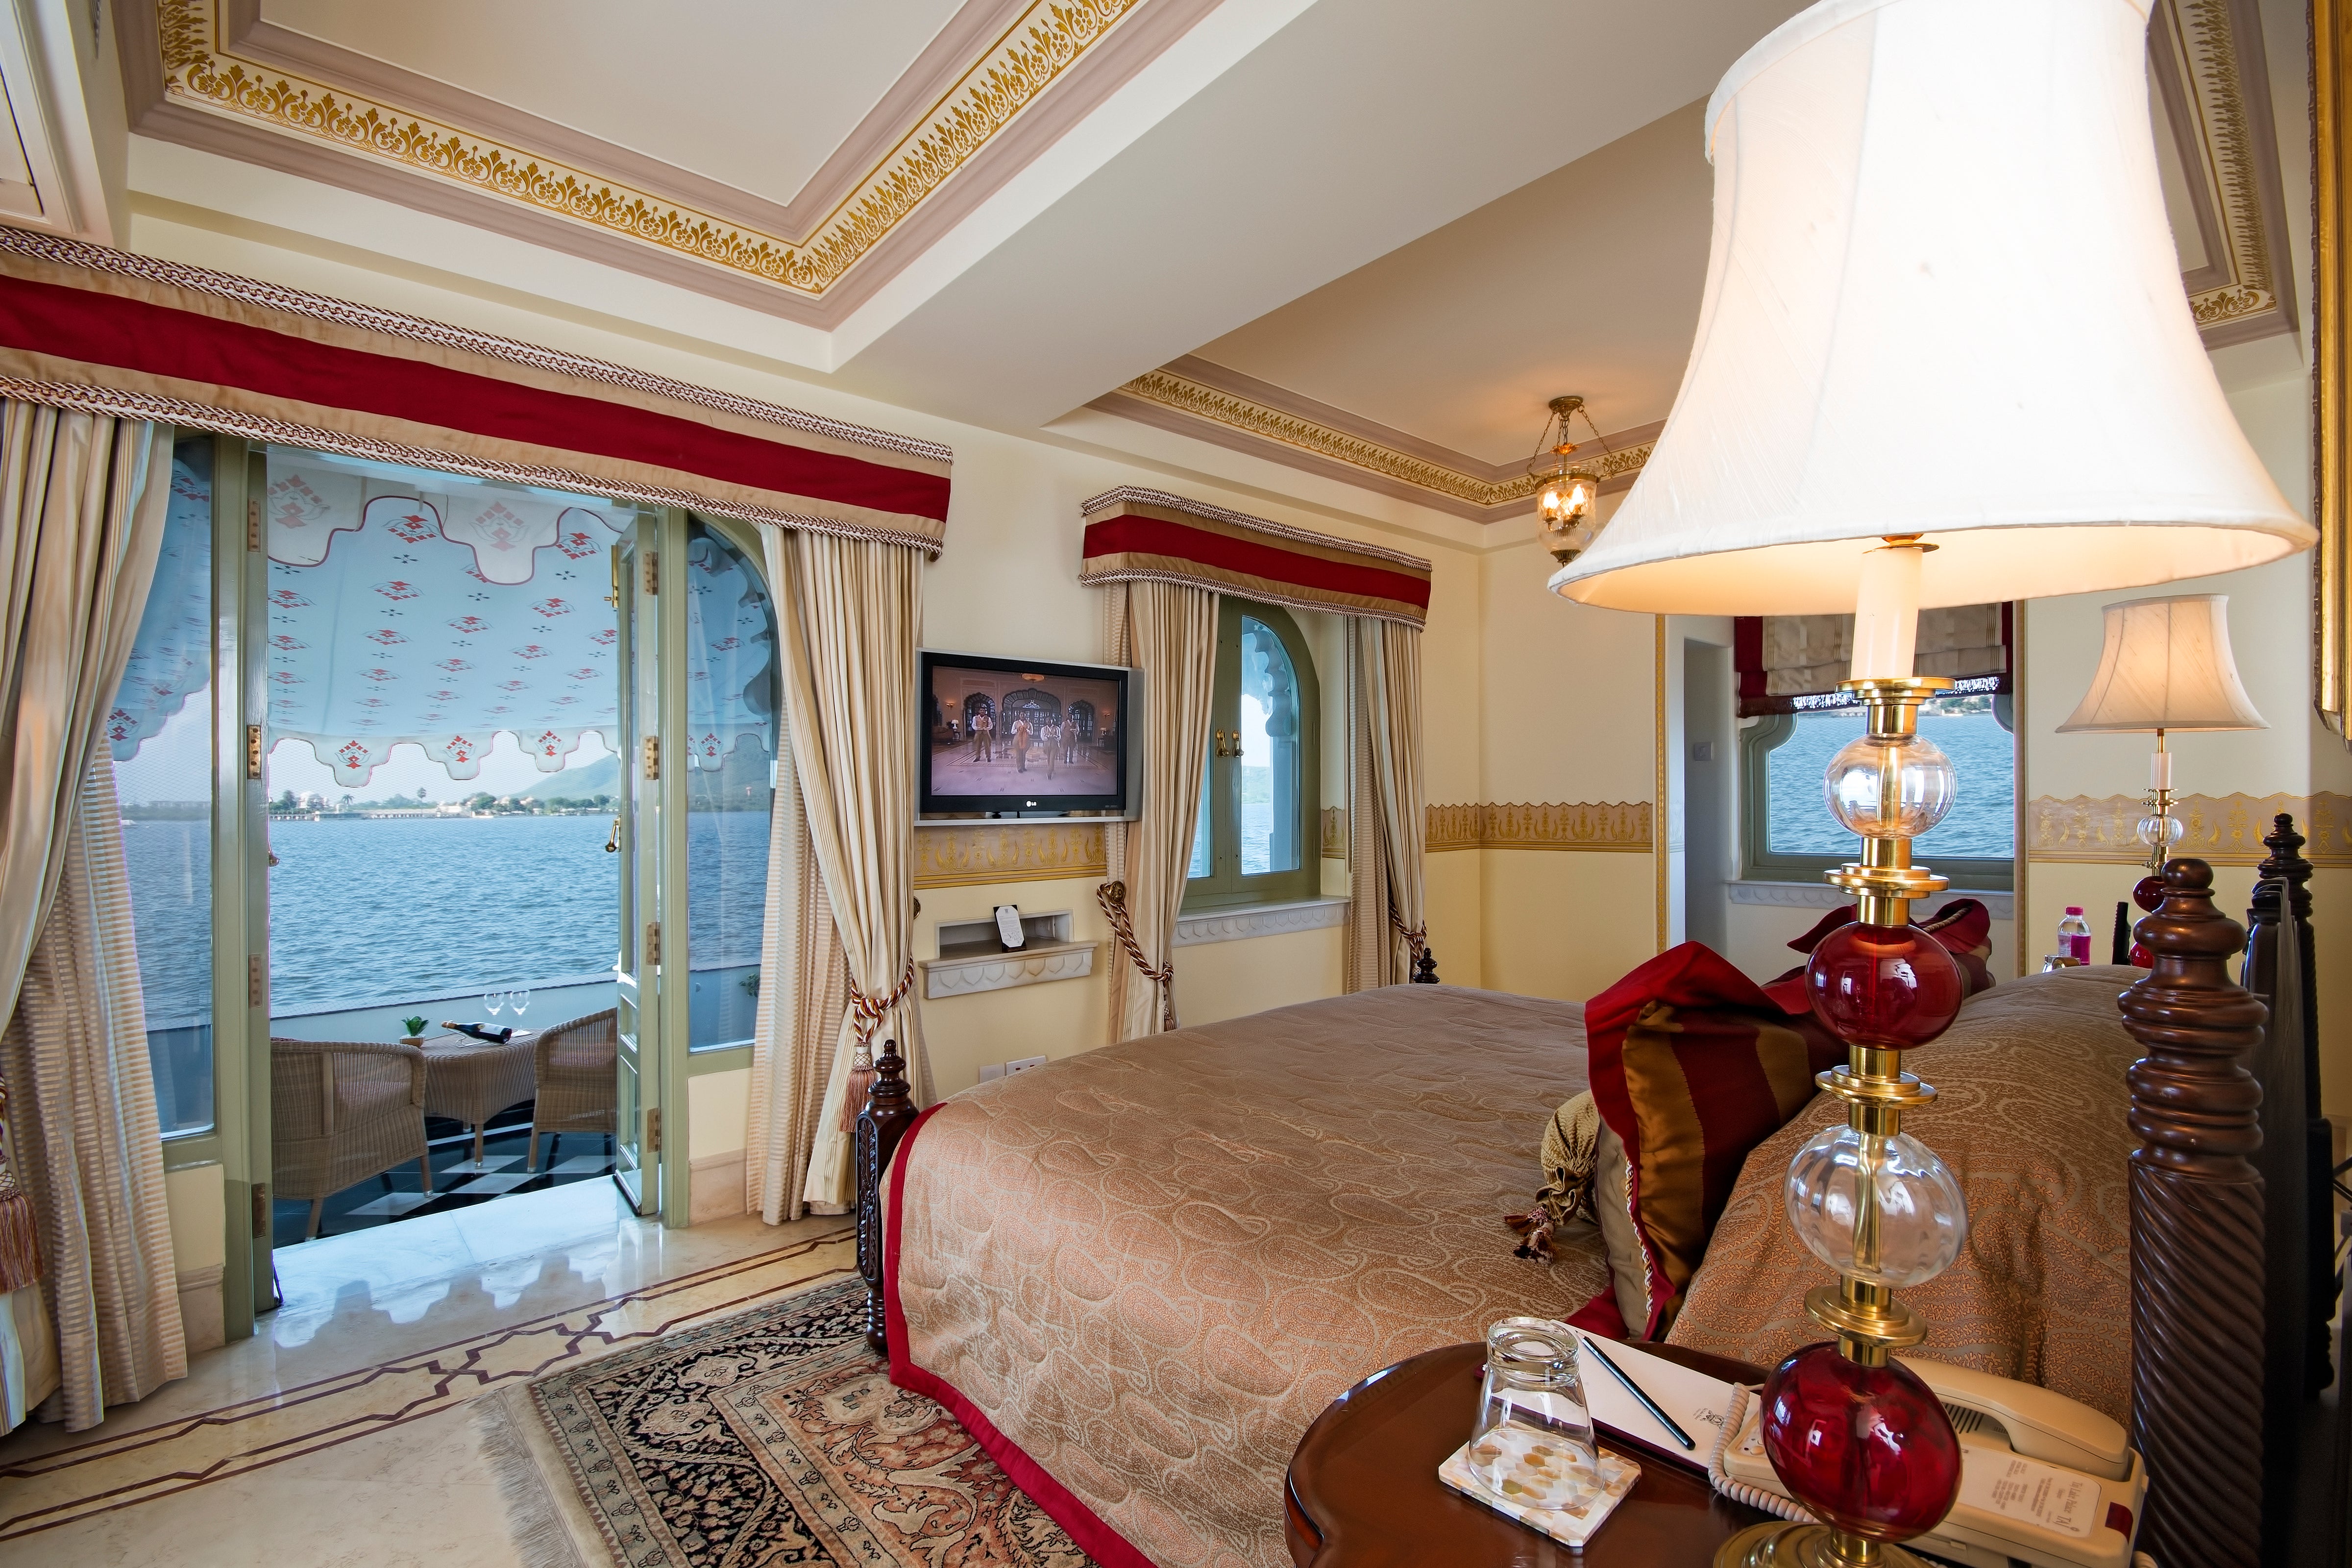 Room with a view at Taj Lake Palace